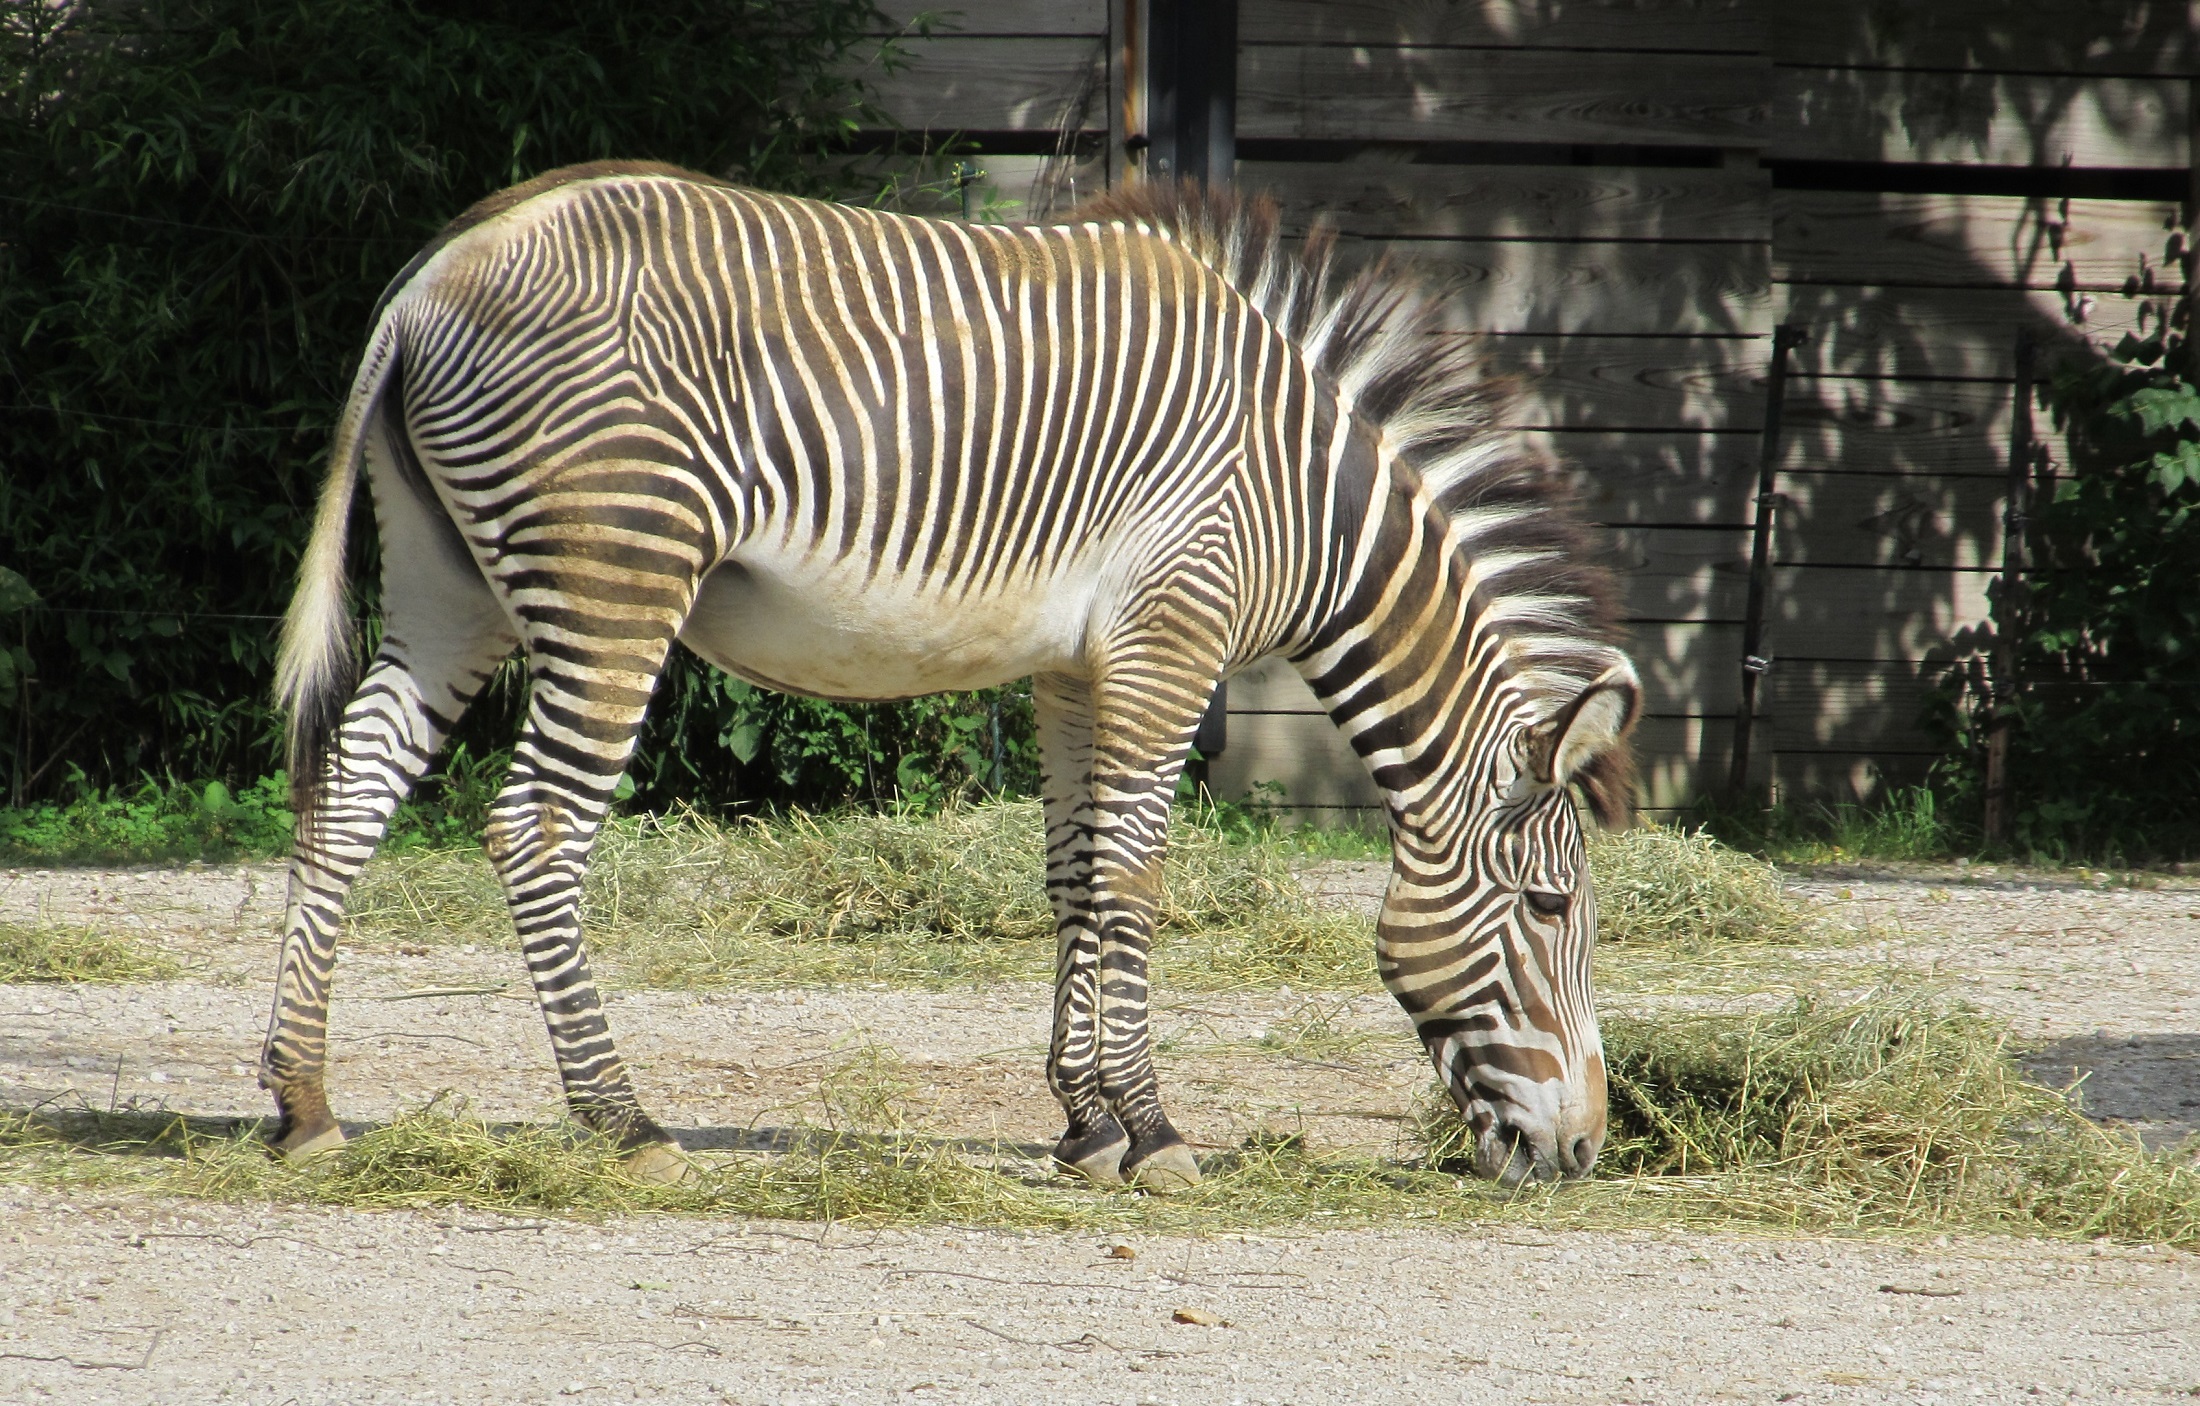 Zebra in the zoo photo